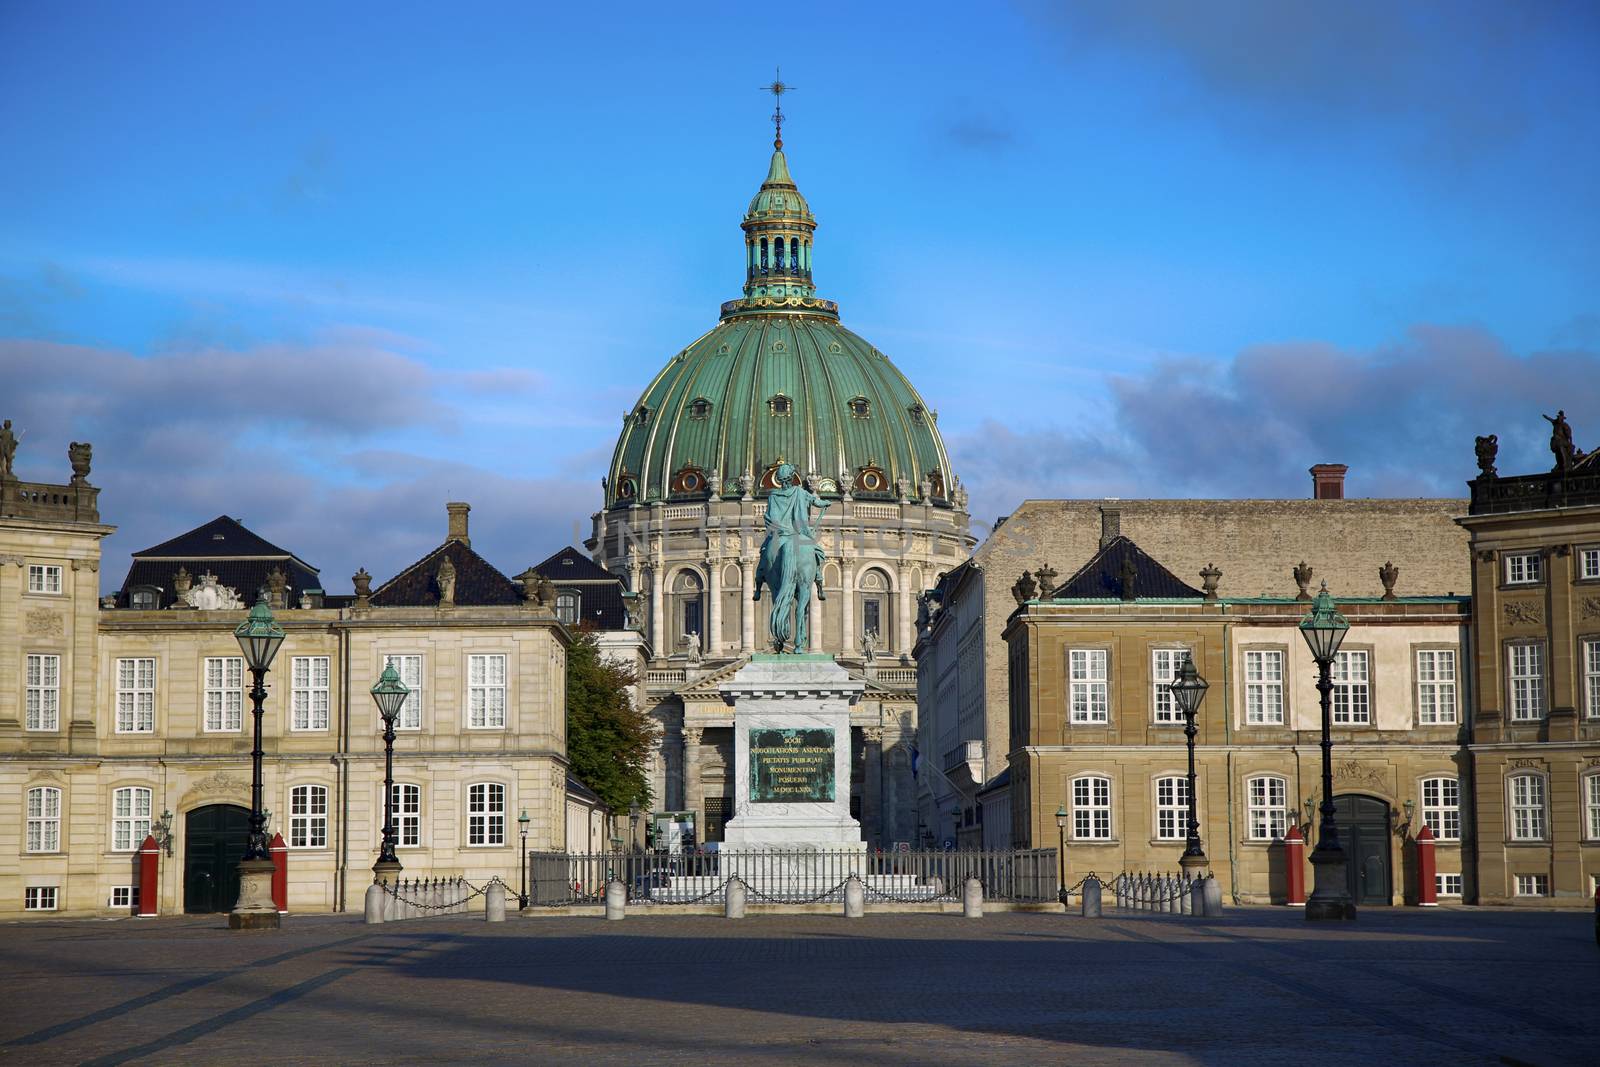 Frederik's Church (Danish: Frederiks Kirke) and Sculpture of Frederik V on Horseback in Amalienborg Square in Copenhagen, Denmark